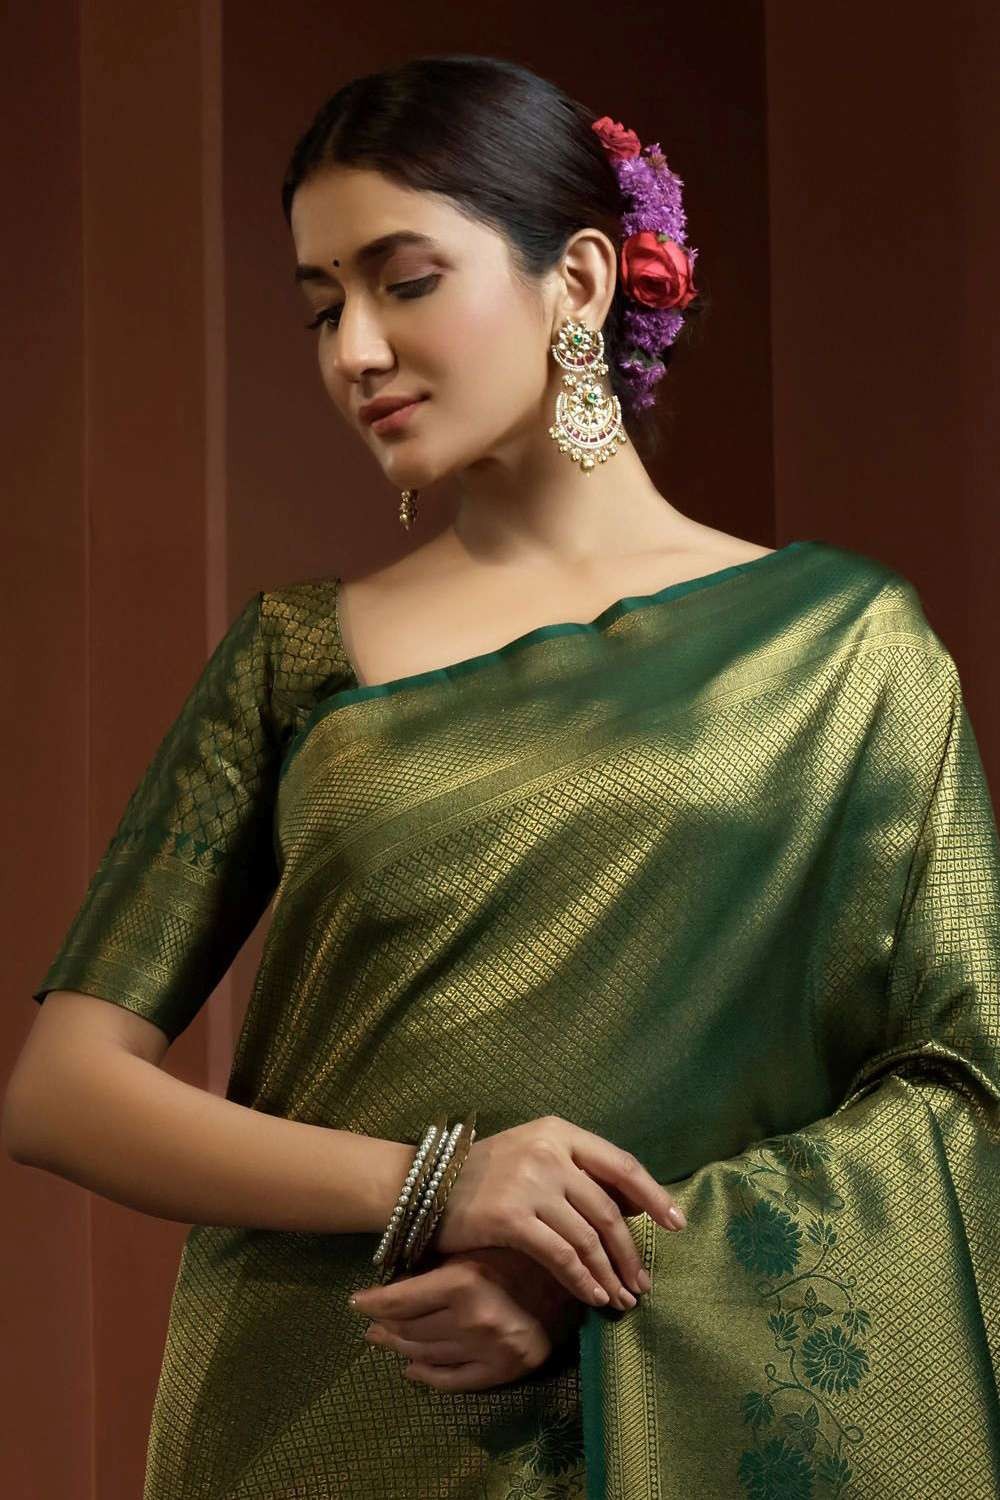 How to style with Jewels for Green Saree | Saree designs, Green saree, Saree